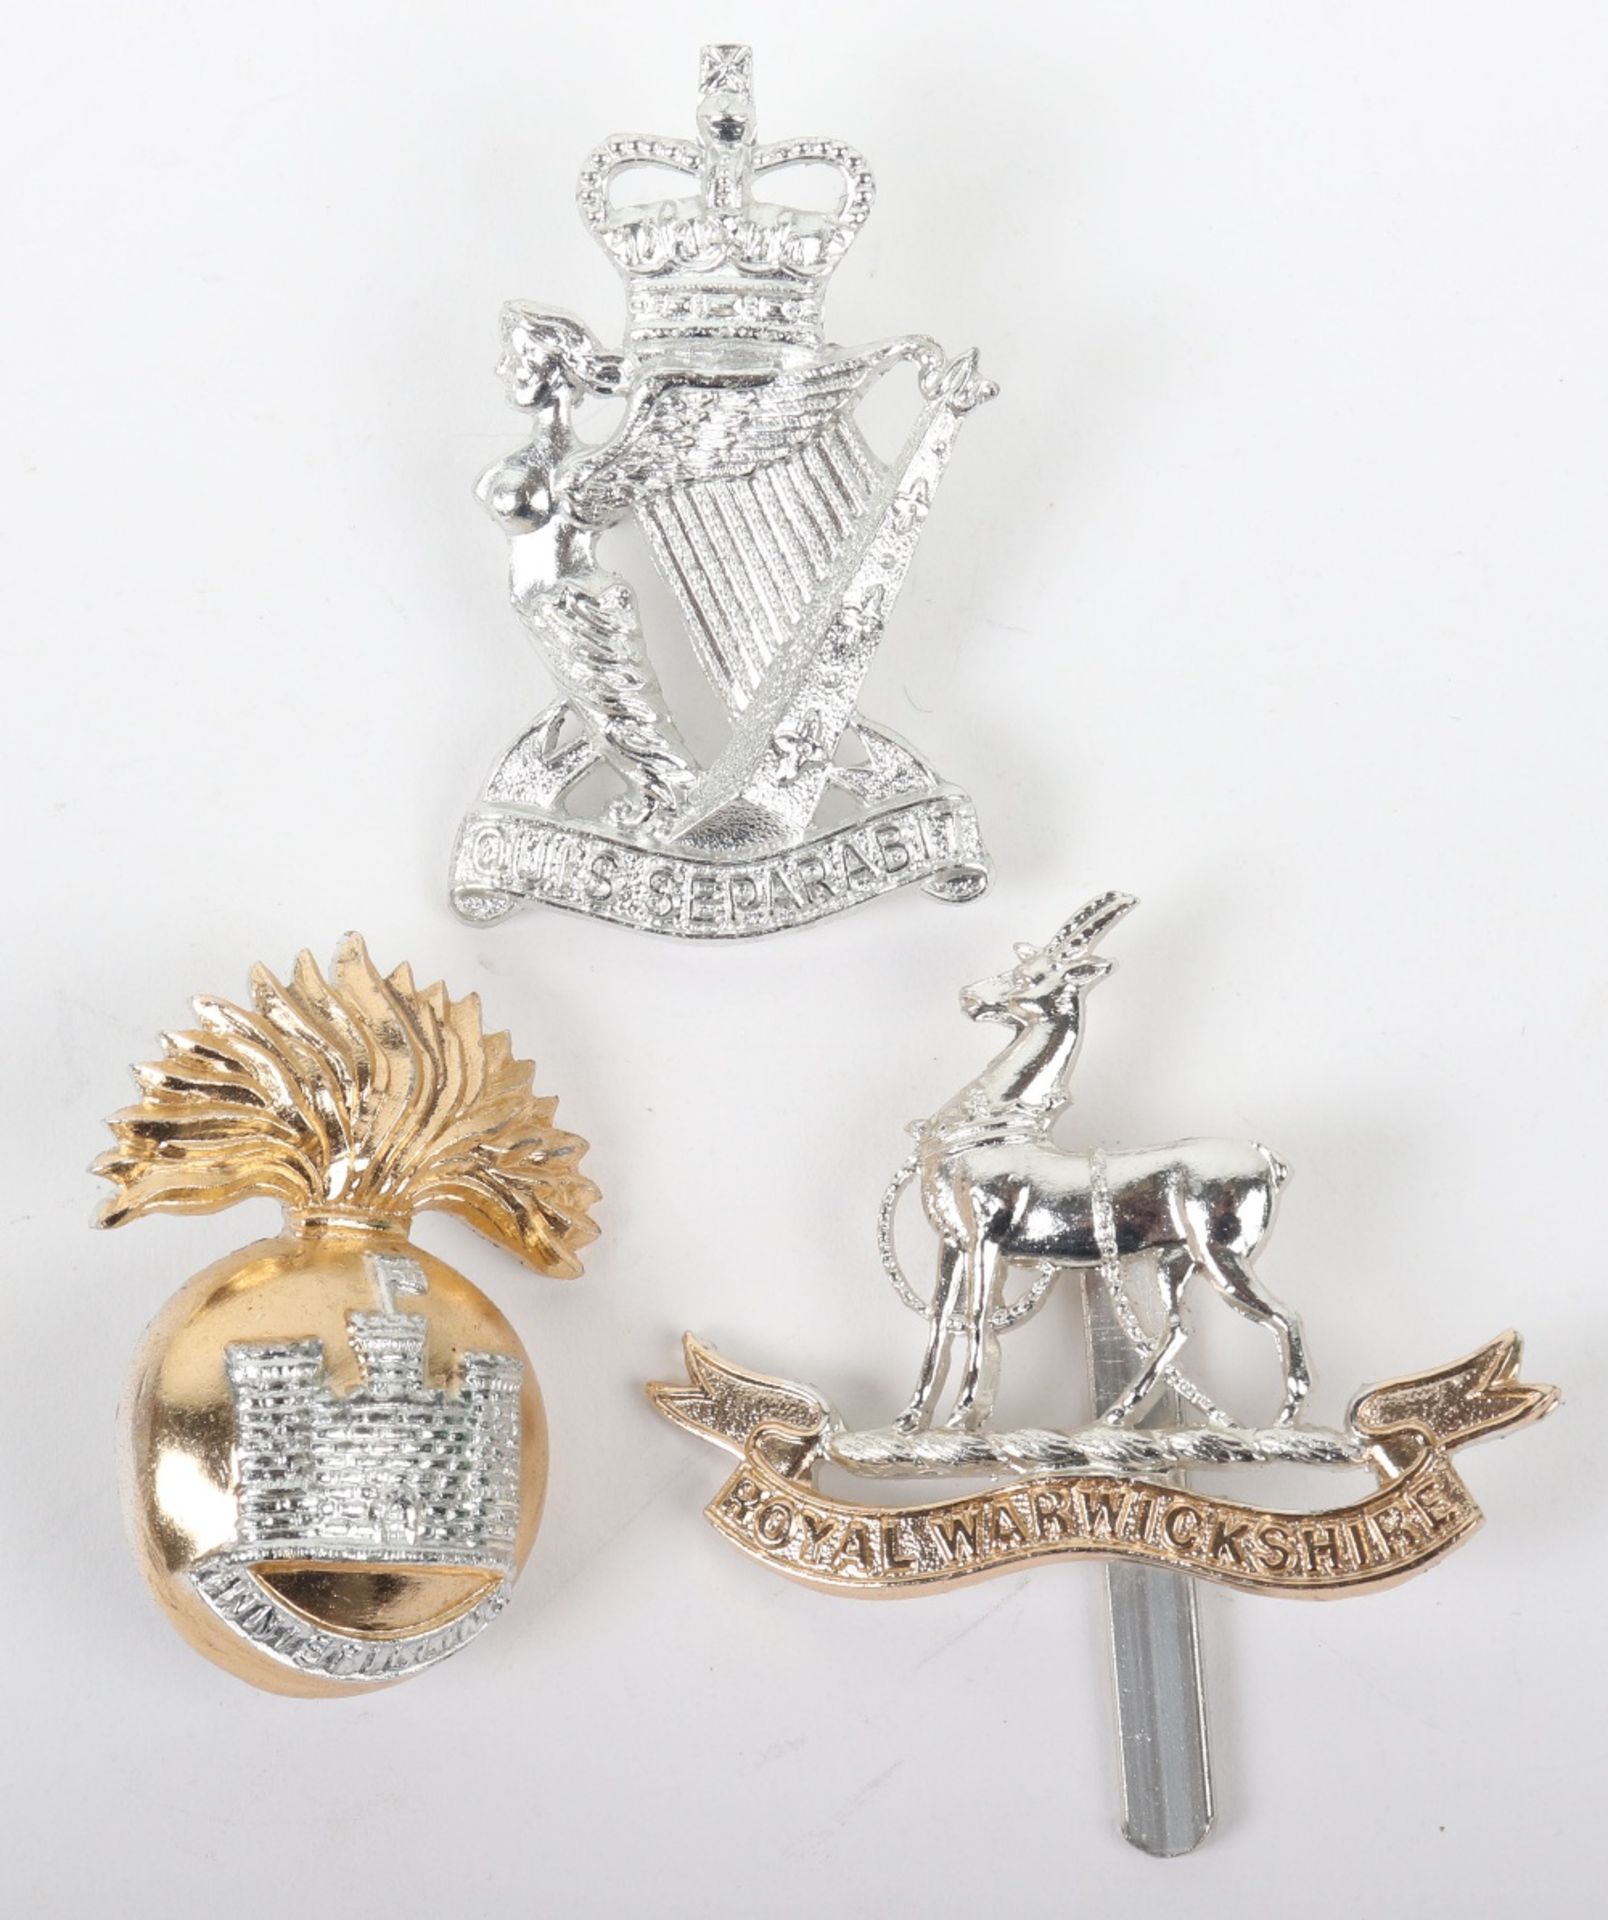 3x Anodised Aluminium British Infantry Regiments Cap Badges